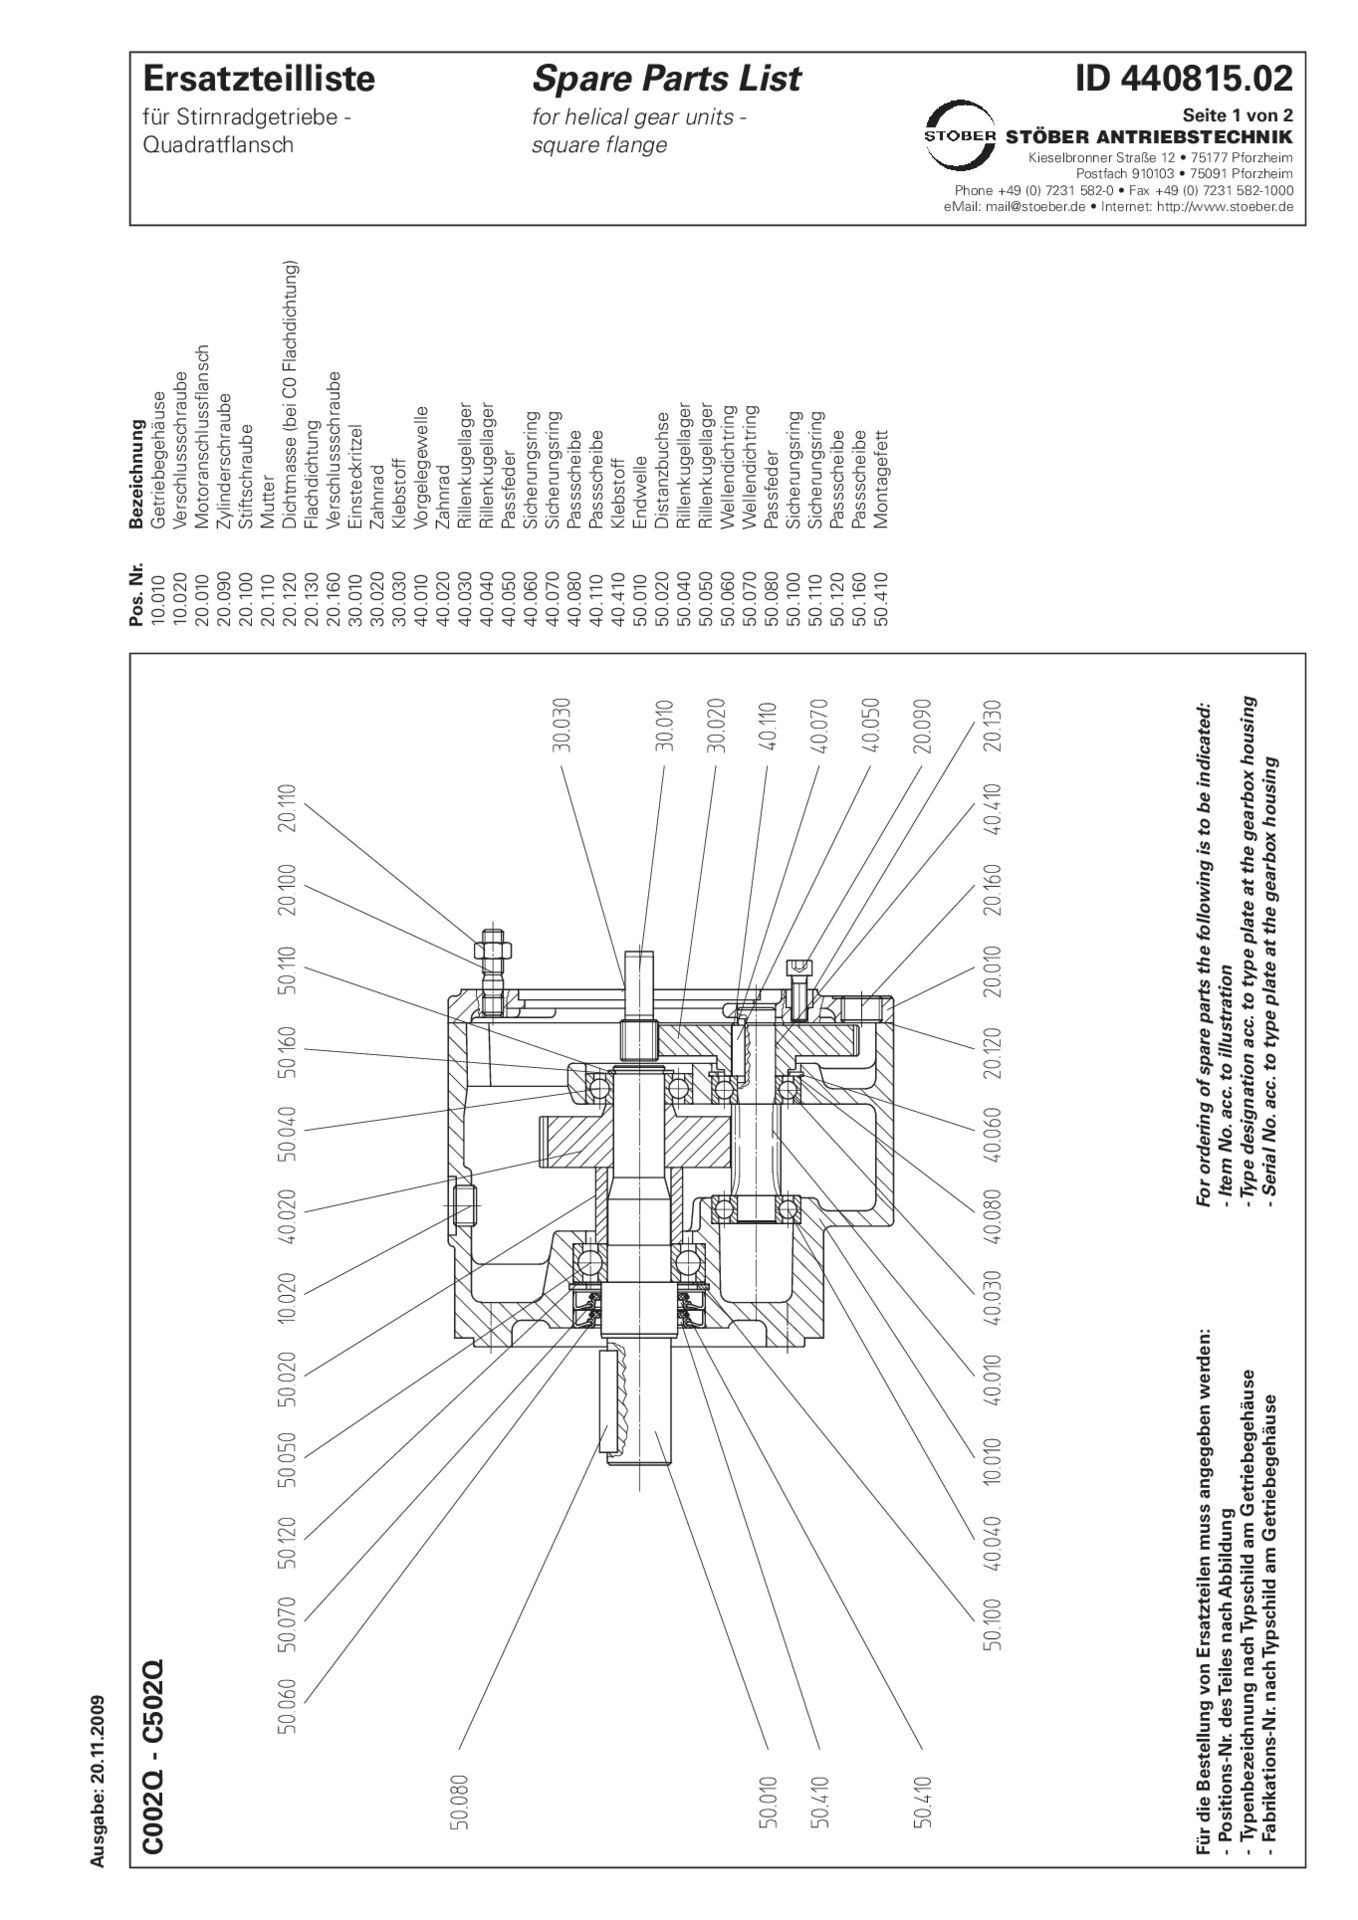 Replacement parts list helical gear units C002 C102 C202 C302 C402 C502 Q